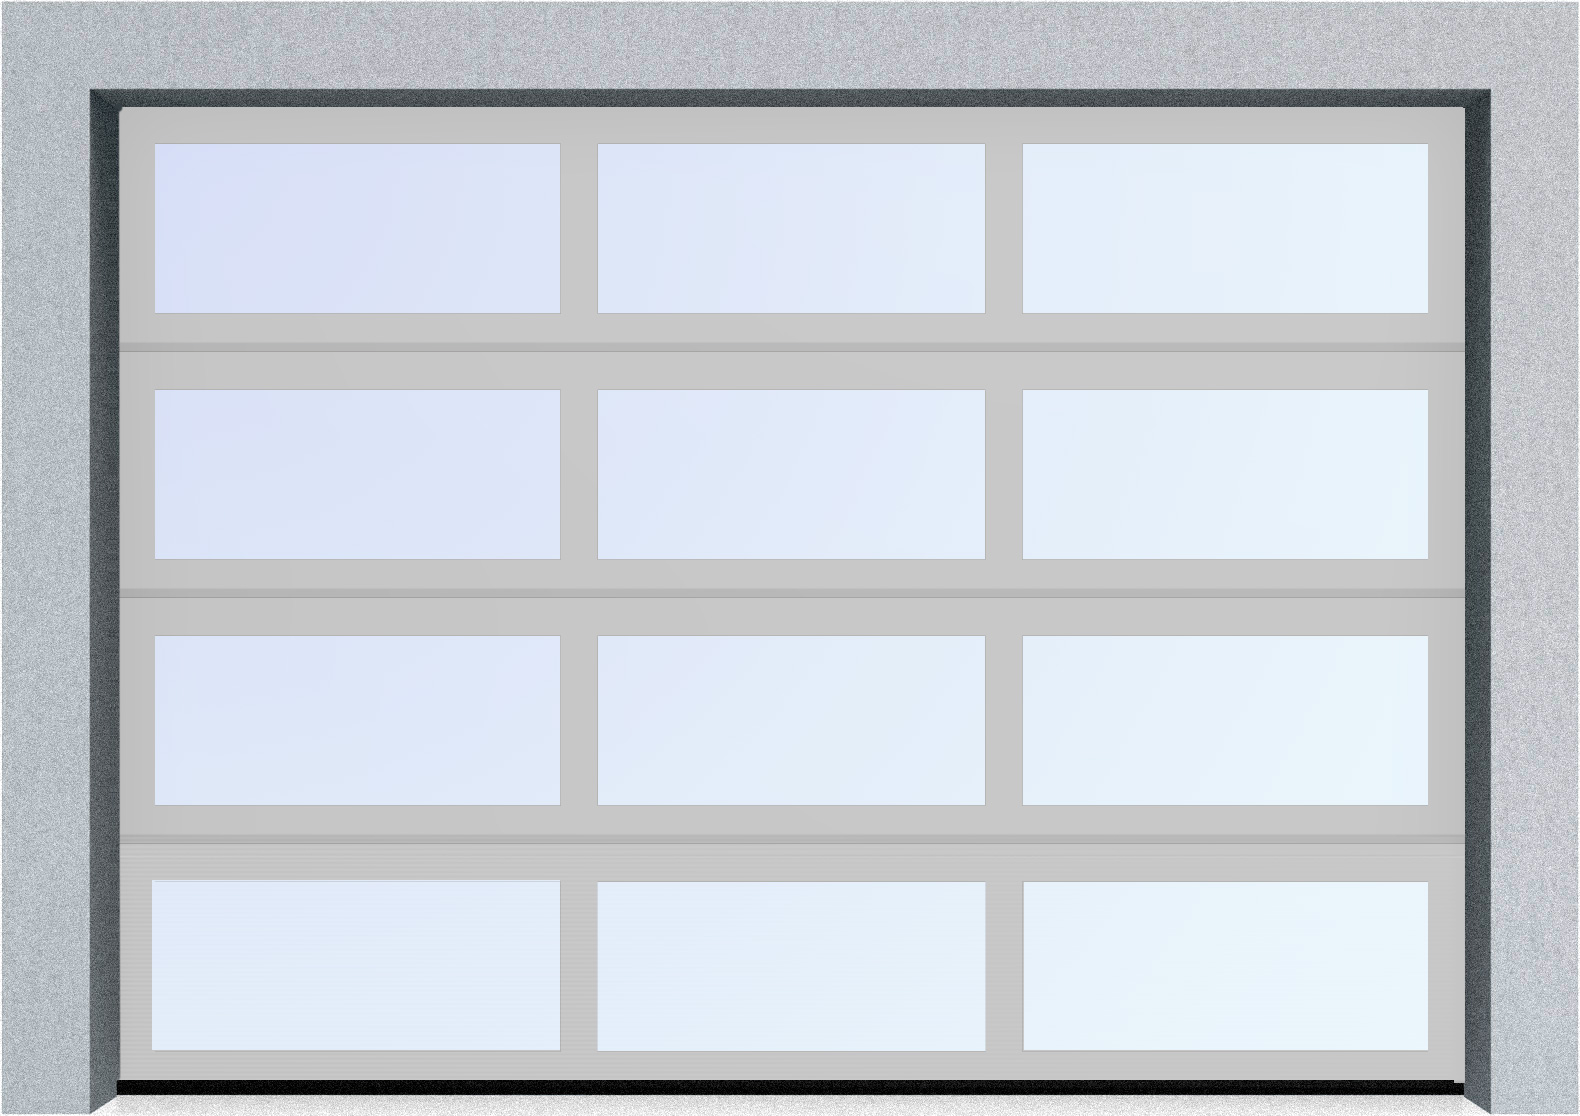  Секционные панорамные ворота серии AluTrend (АЛП) 6500х5500 нижняя панель стандартные цвета, фото 8 